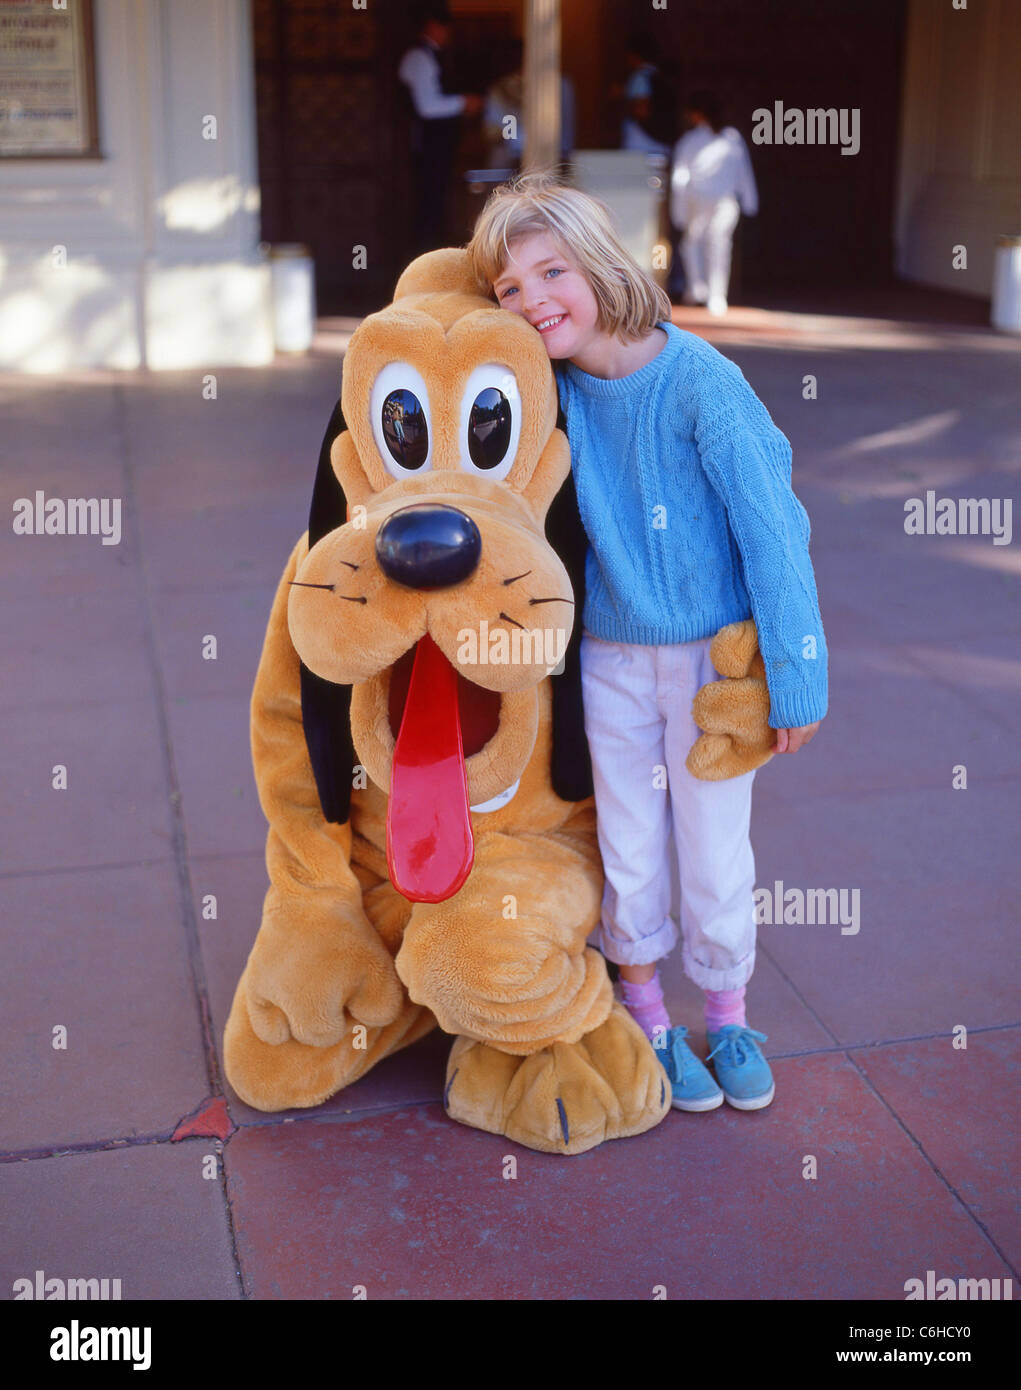 Junges Mädchen mit Pluto-Charakter, Fantasyland, Disneyland, Anaheim, Kalifornien, Vereinigte Staaten von Amerika Stockfoto